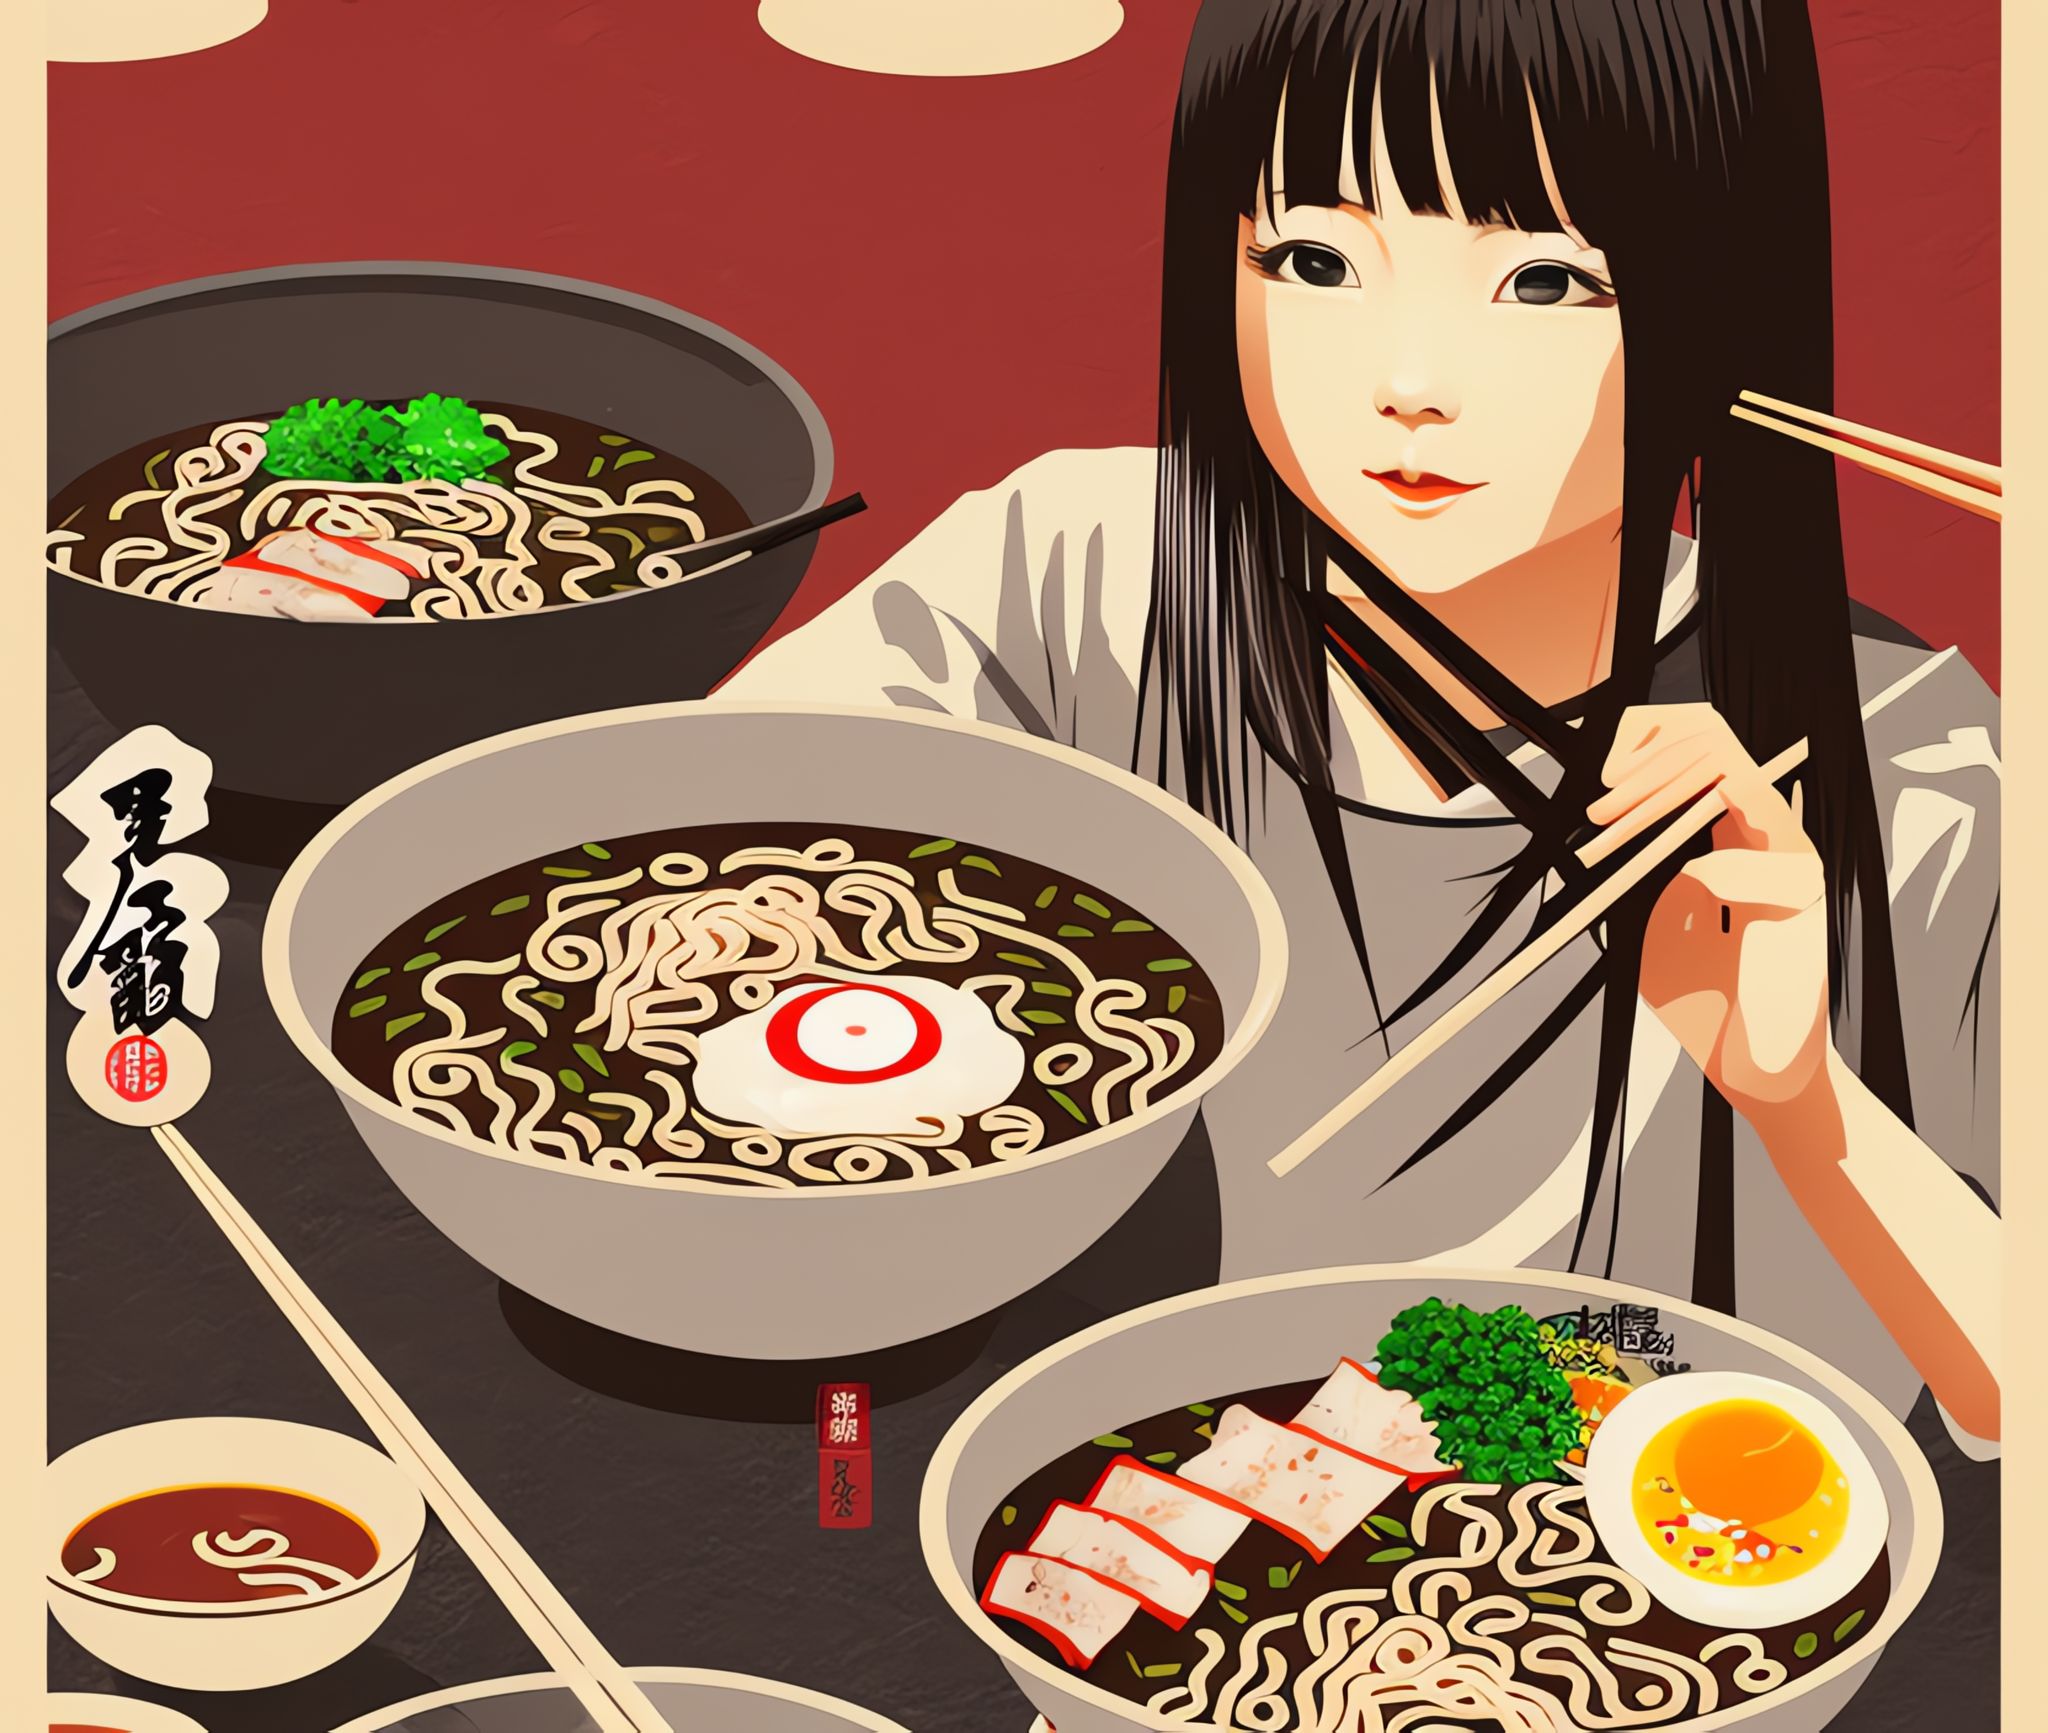 Ramen-restaurant-Japanese-girl-art-work-cgi-art-Japanese-food-delicious-restaurant-poster-v-cc7b